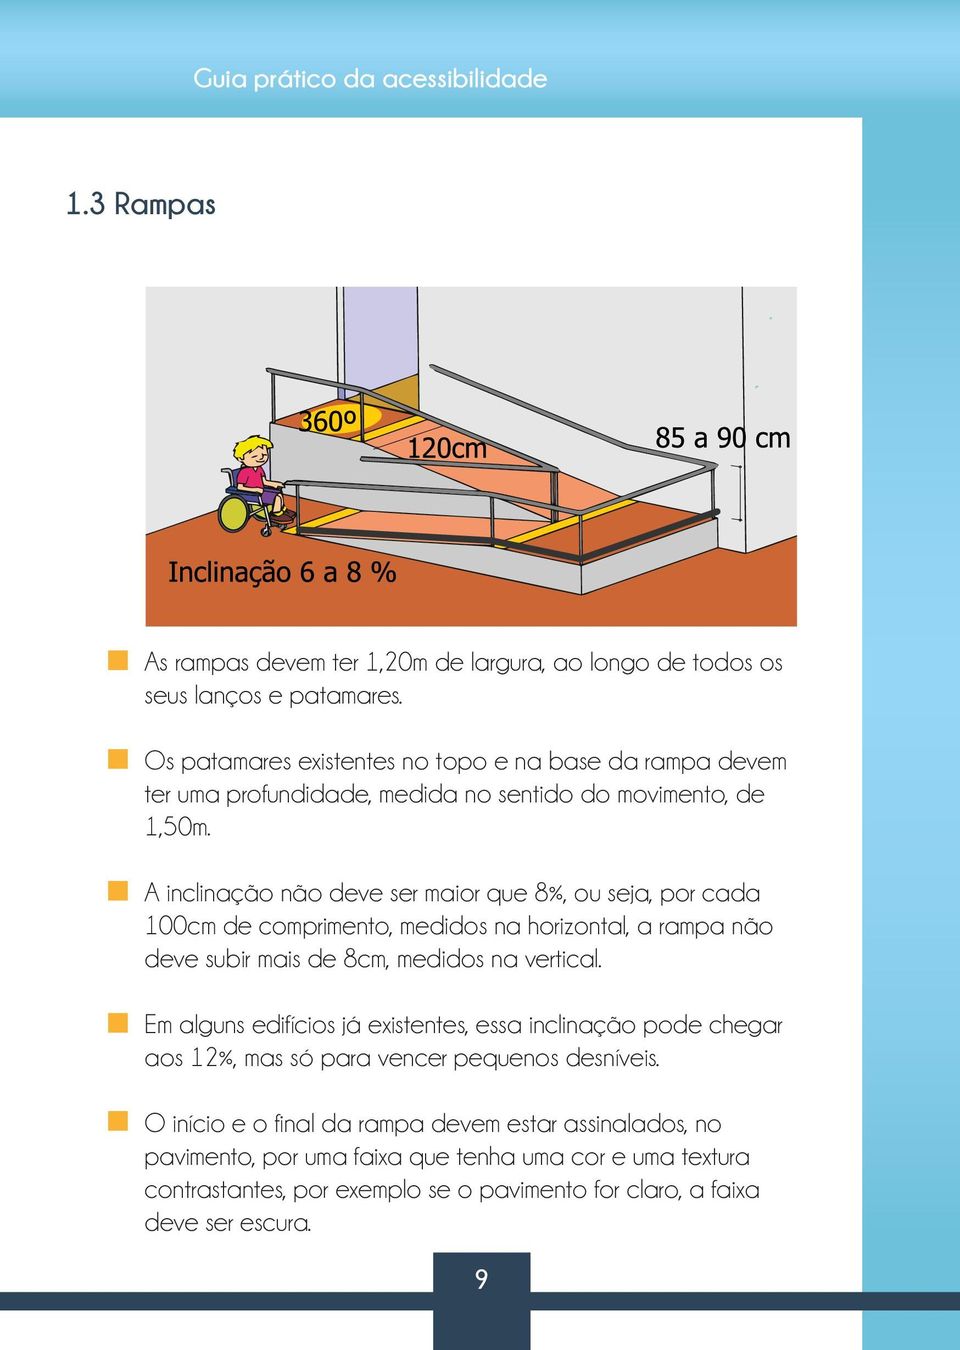 A inclinação não deve ser maior que 8%, ou seja, por cada 100cm de comprimento, medidos na horizontal, a rampa não deve subir mais de 8cm, medidos na vertical.